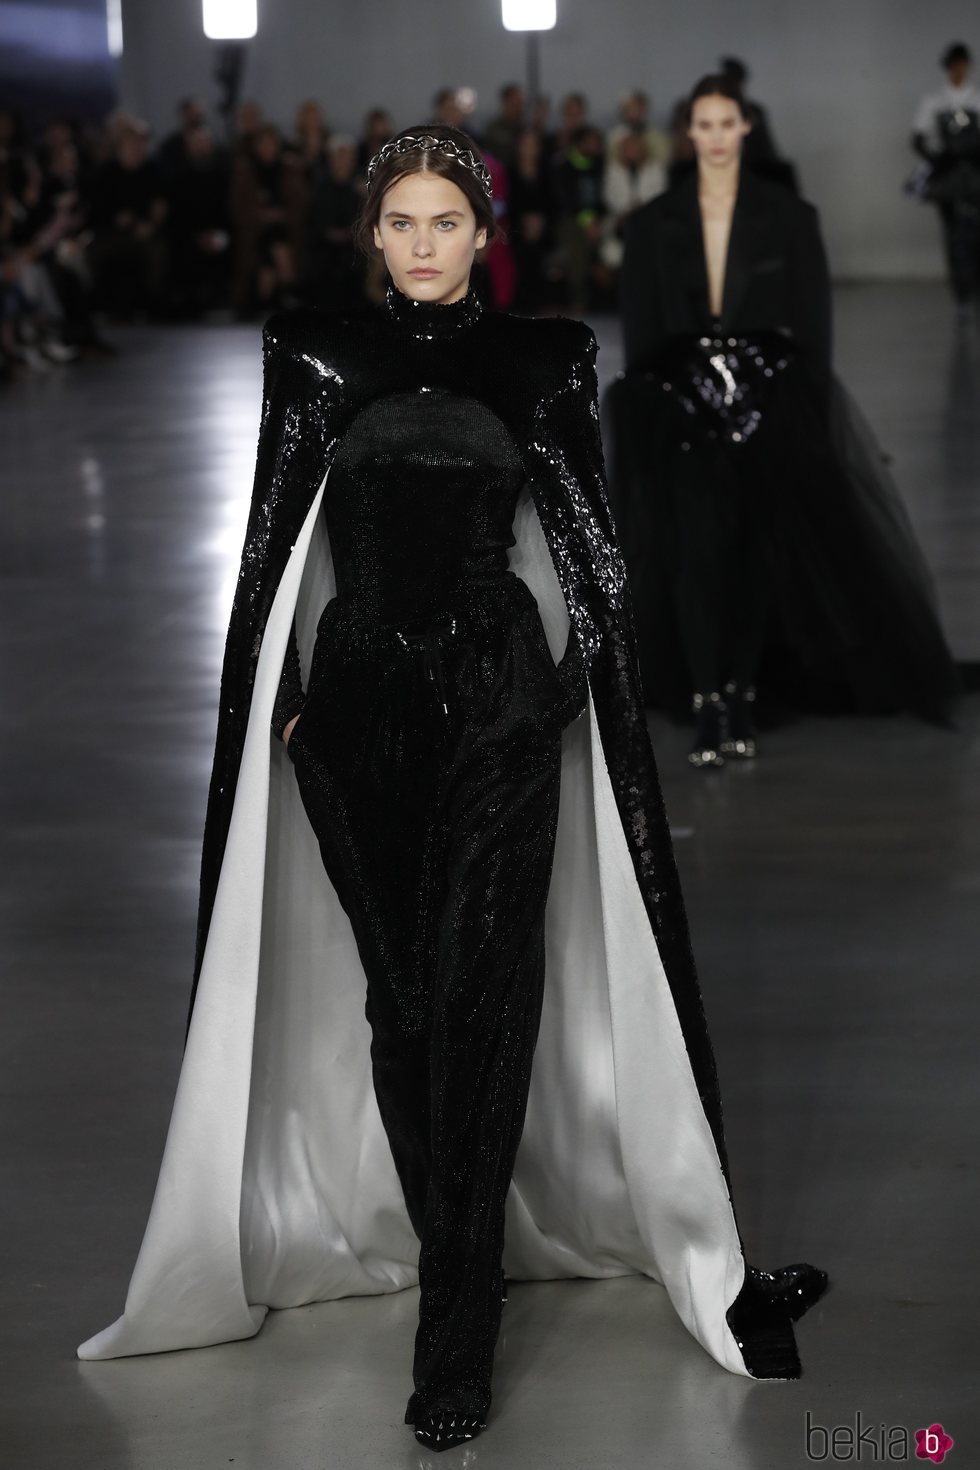 Modelo luciendo un vestido capa de la colección otoño/invierno 2019/2020 de Balmain en París